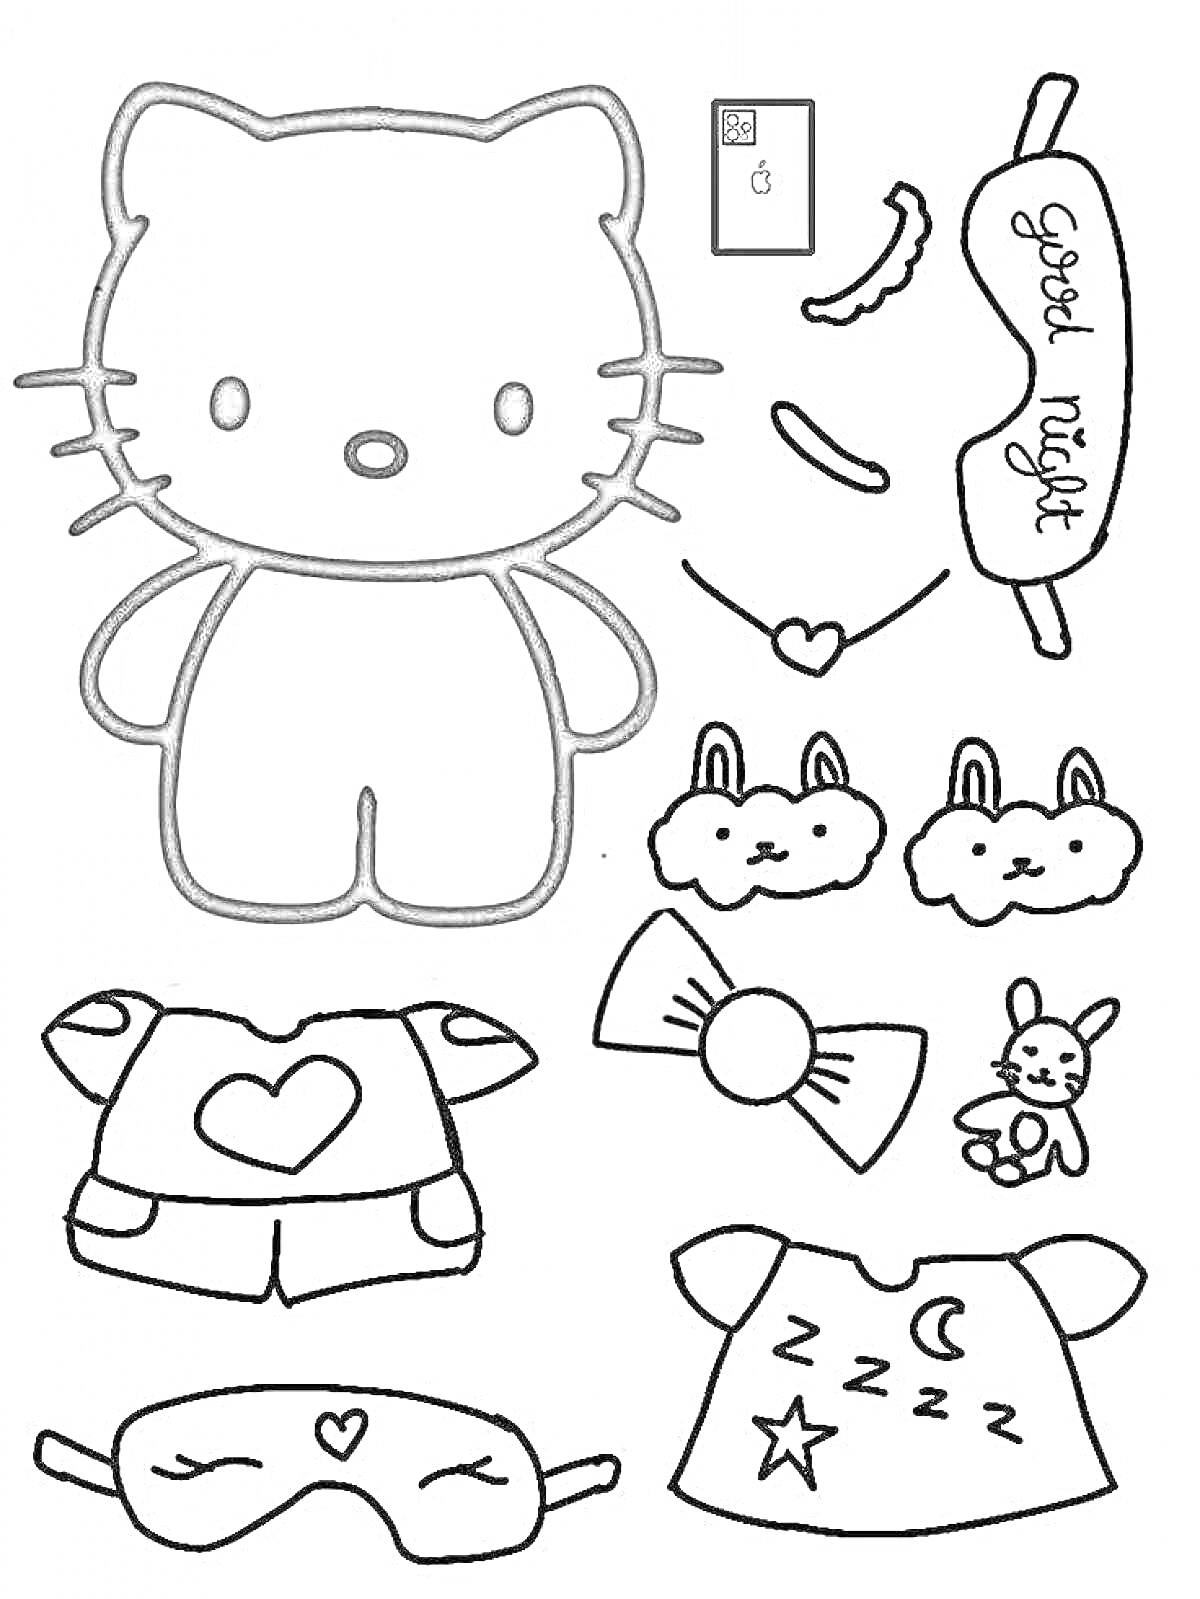 Раскраска Hello Kitty с комплектом одежды и аксессуаров для сна (маска для сна, пижама, носки, тапочки, игрушка, подушка)